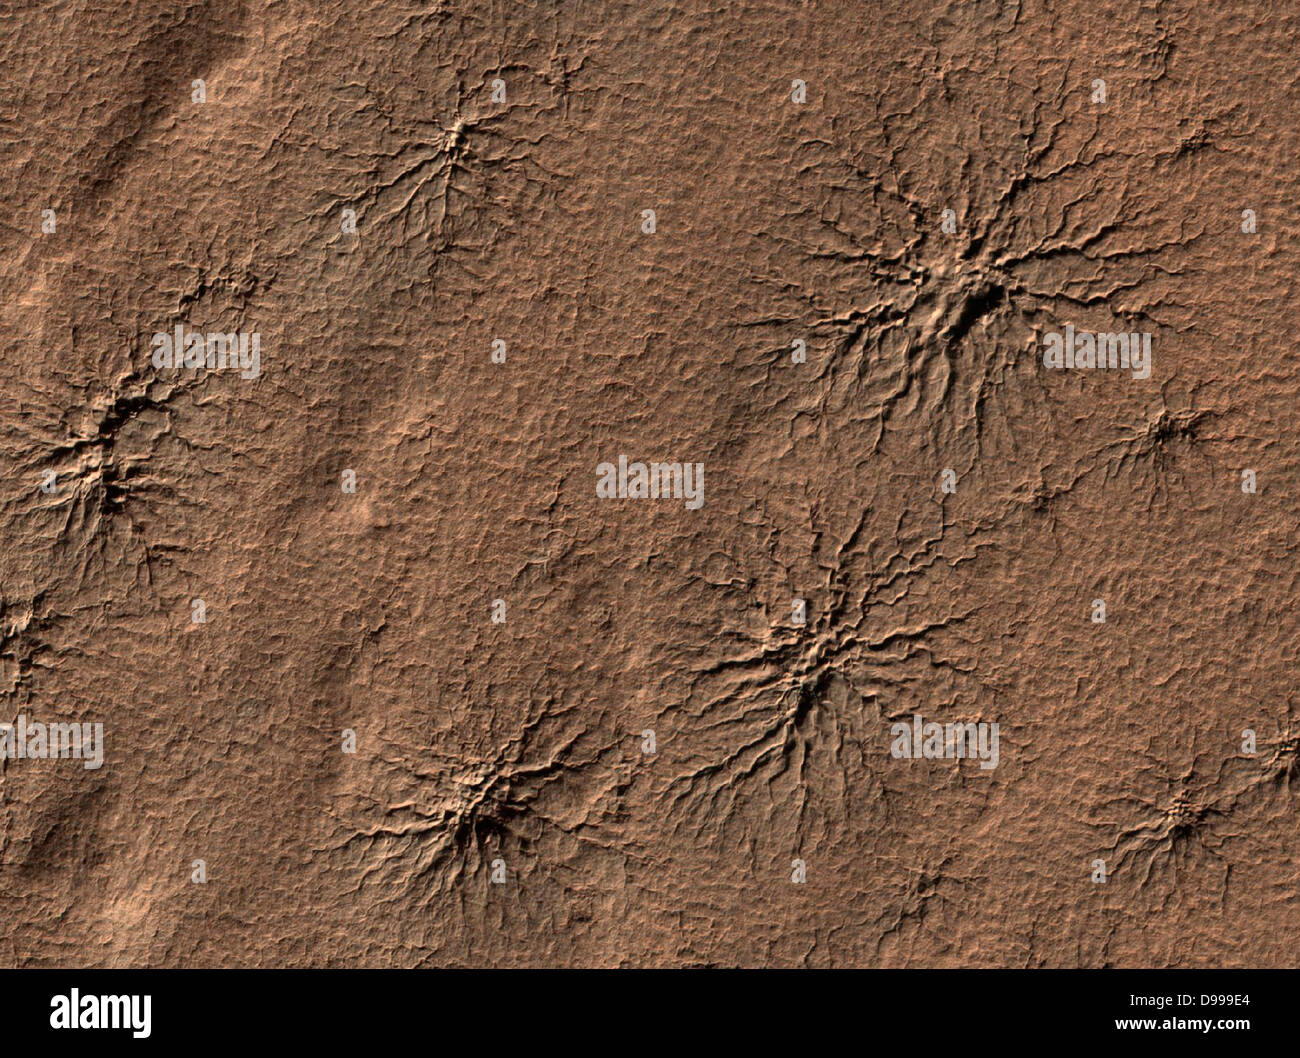 Spider-caratteristiche di forma nella regione polare meridionale di Marte sono scolpiti da vaporizzare il ghiaccio secco in un dinamico processo stagionale. La sonda Mars Reconnaissance Orbiter. Foto Stock